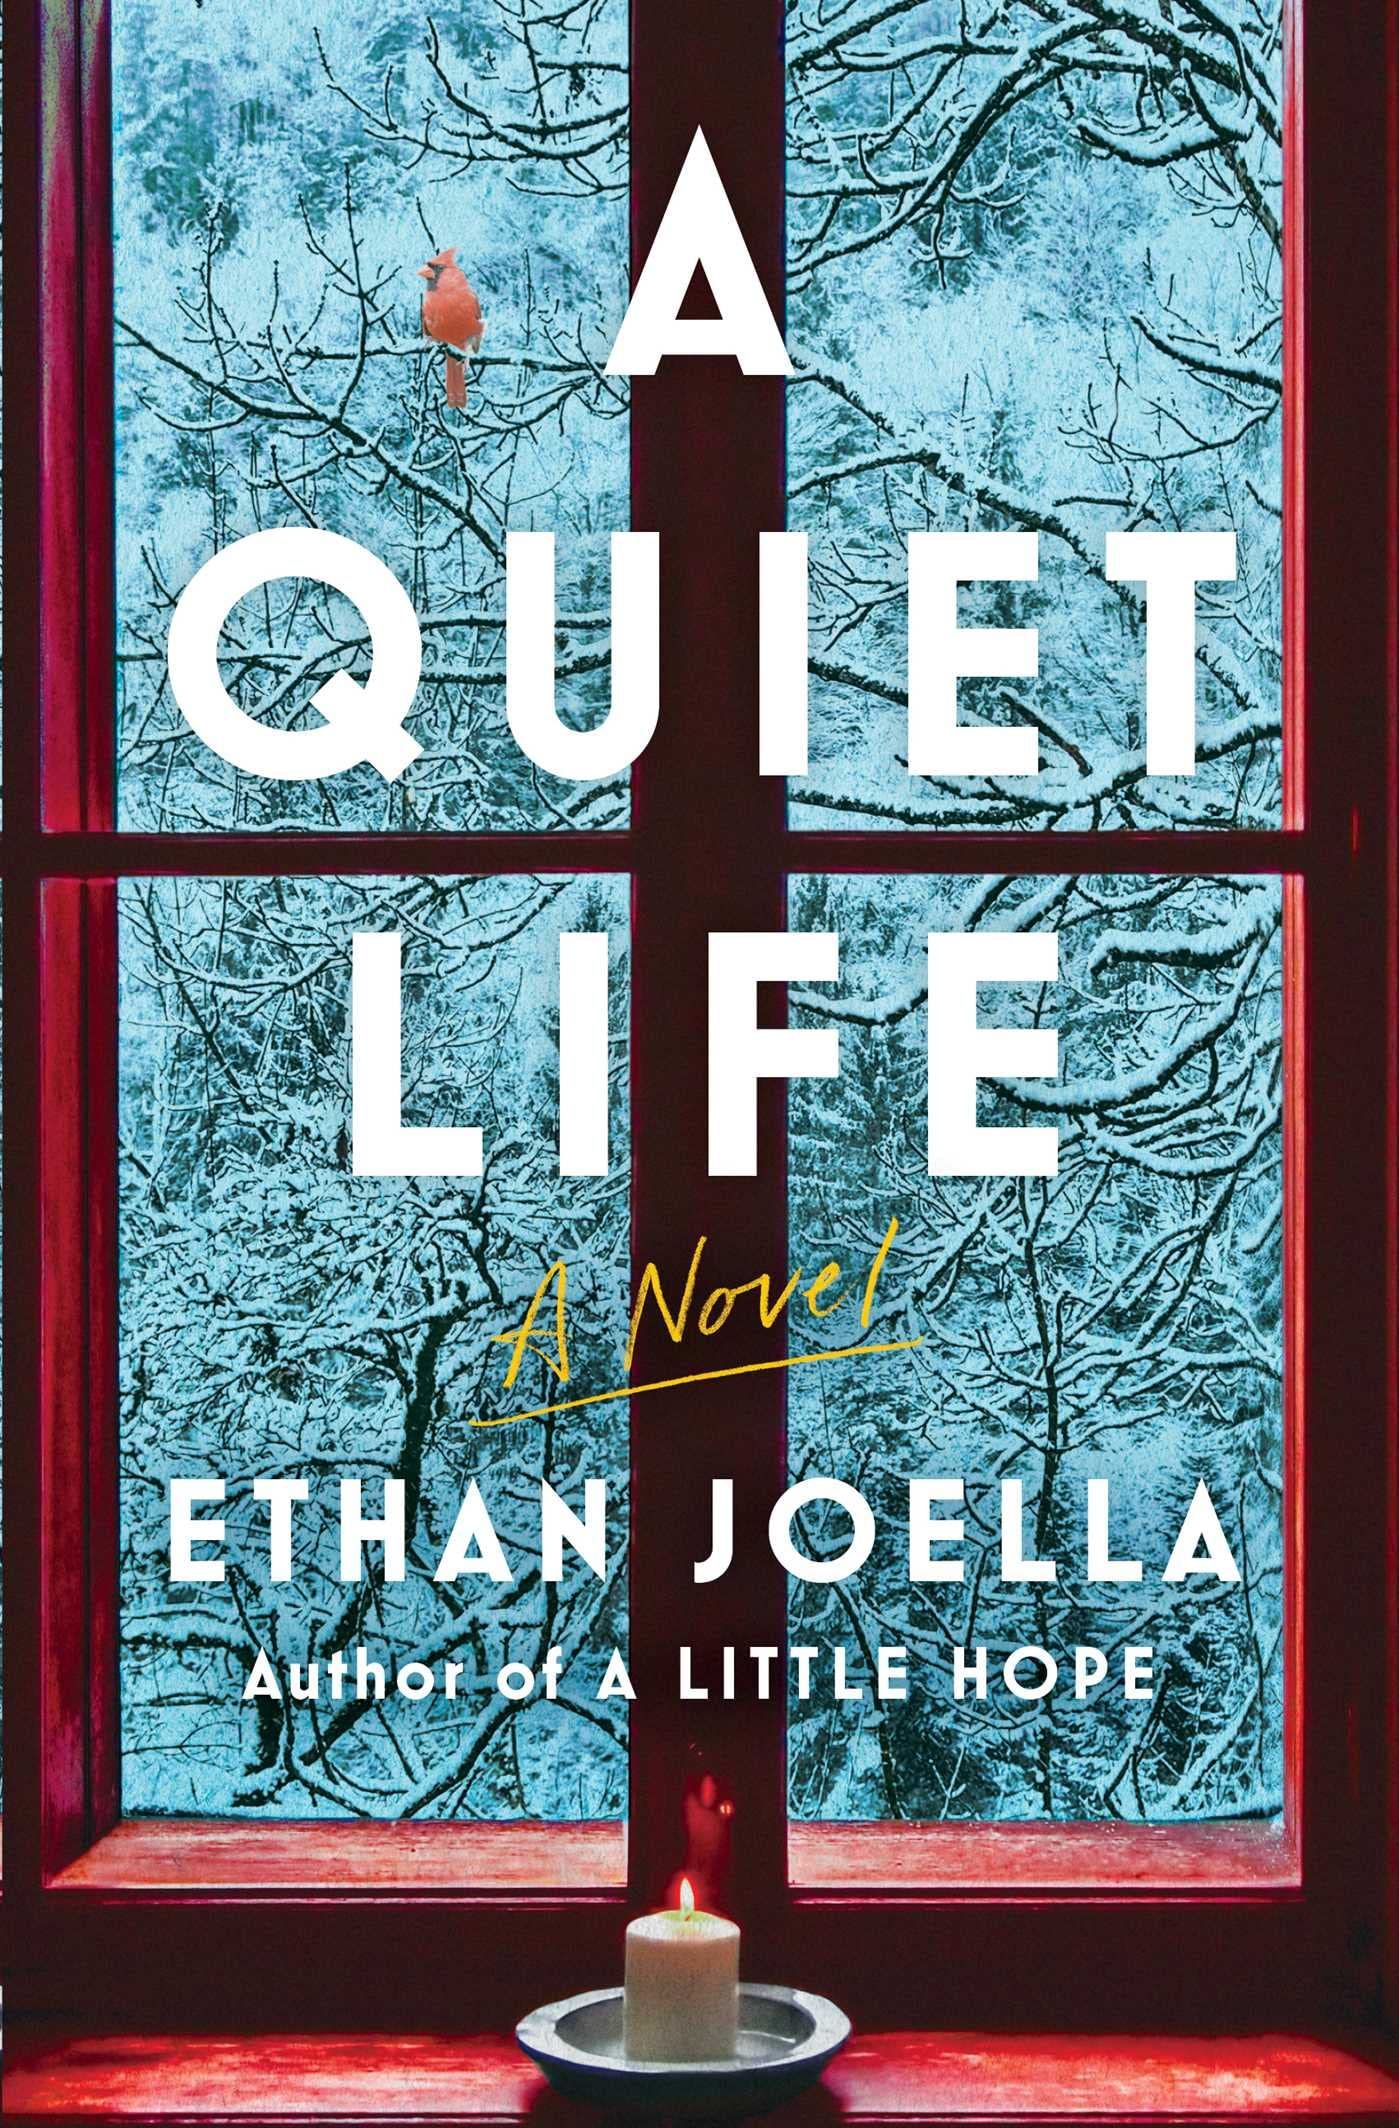 A Quiet Life cover